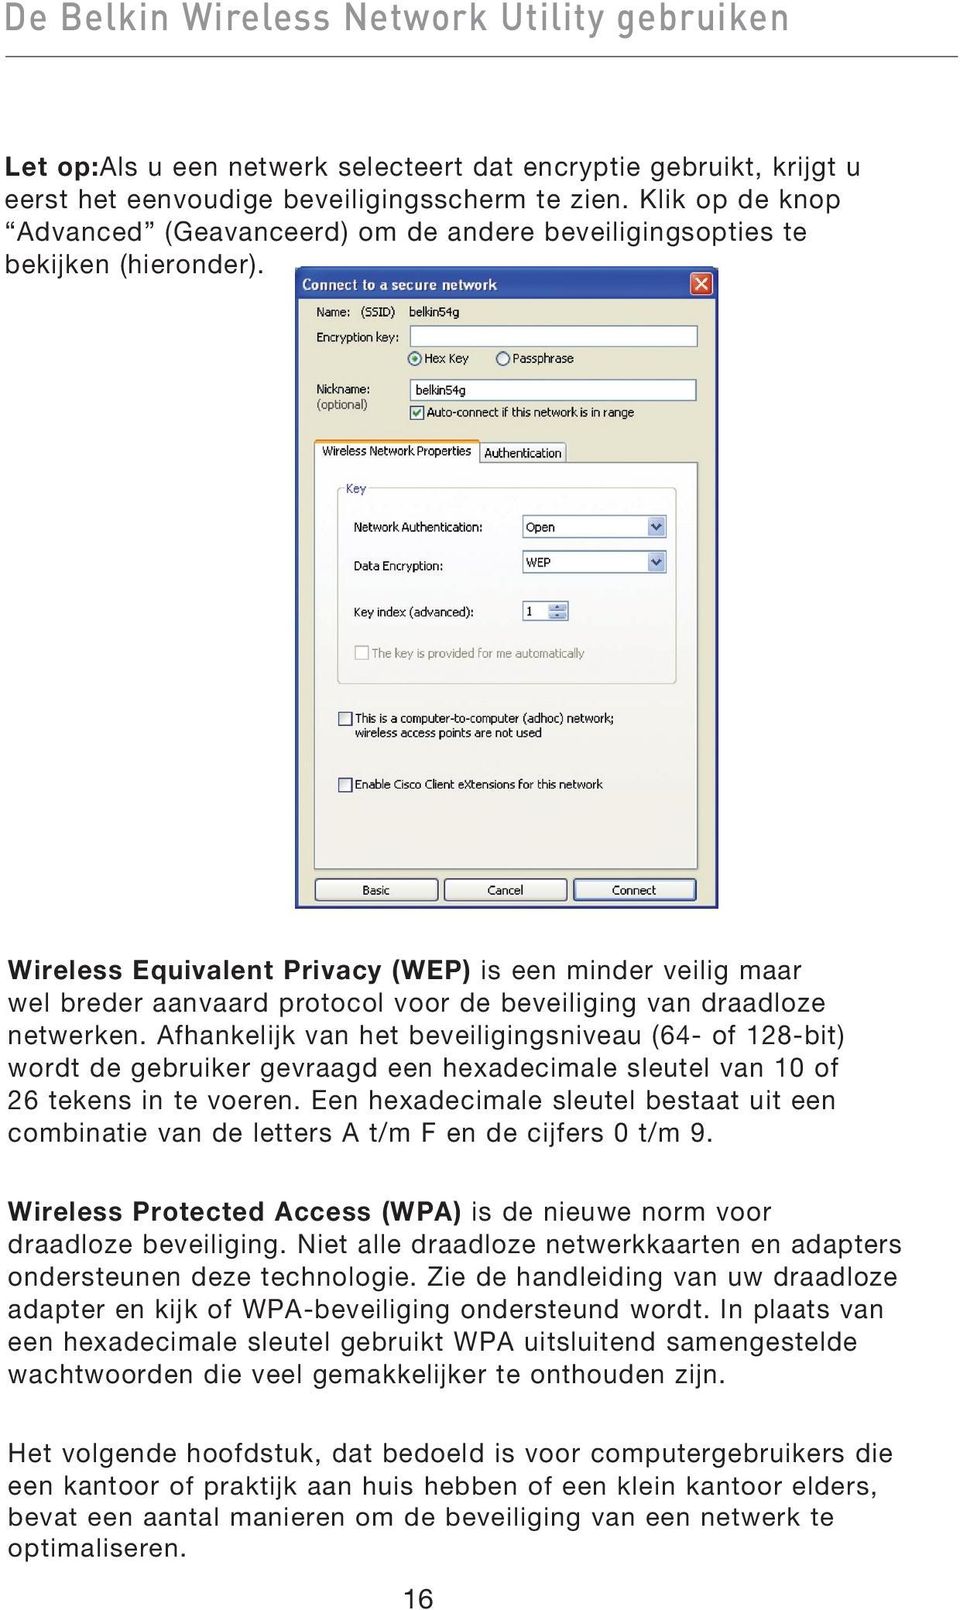 Wireless Equivalent Privacy (WEP) is een minder veilig maar wel breder aanvaard protocol voor de beveiliging van draadloze netwerken.